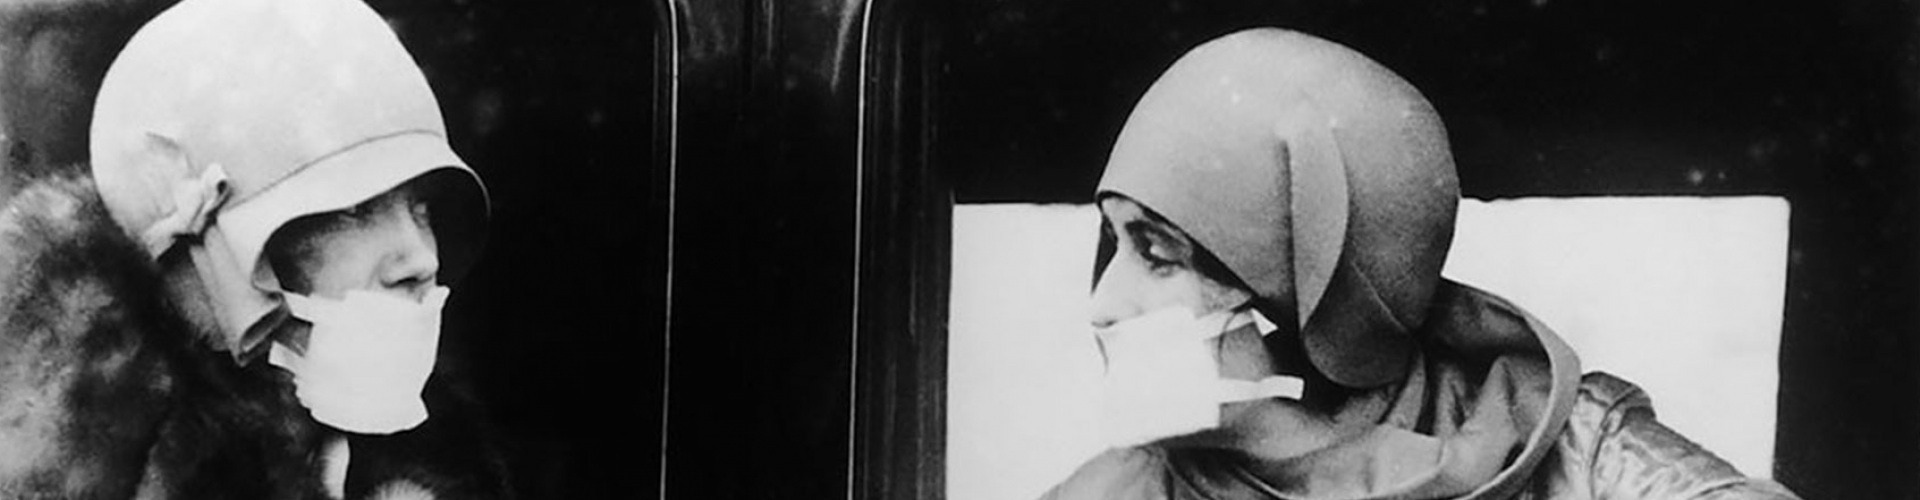 Maszkot viselő emberek az 1918-as spanyolnátha idején